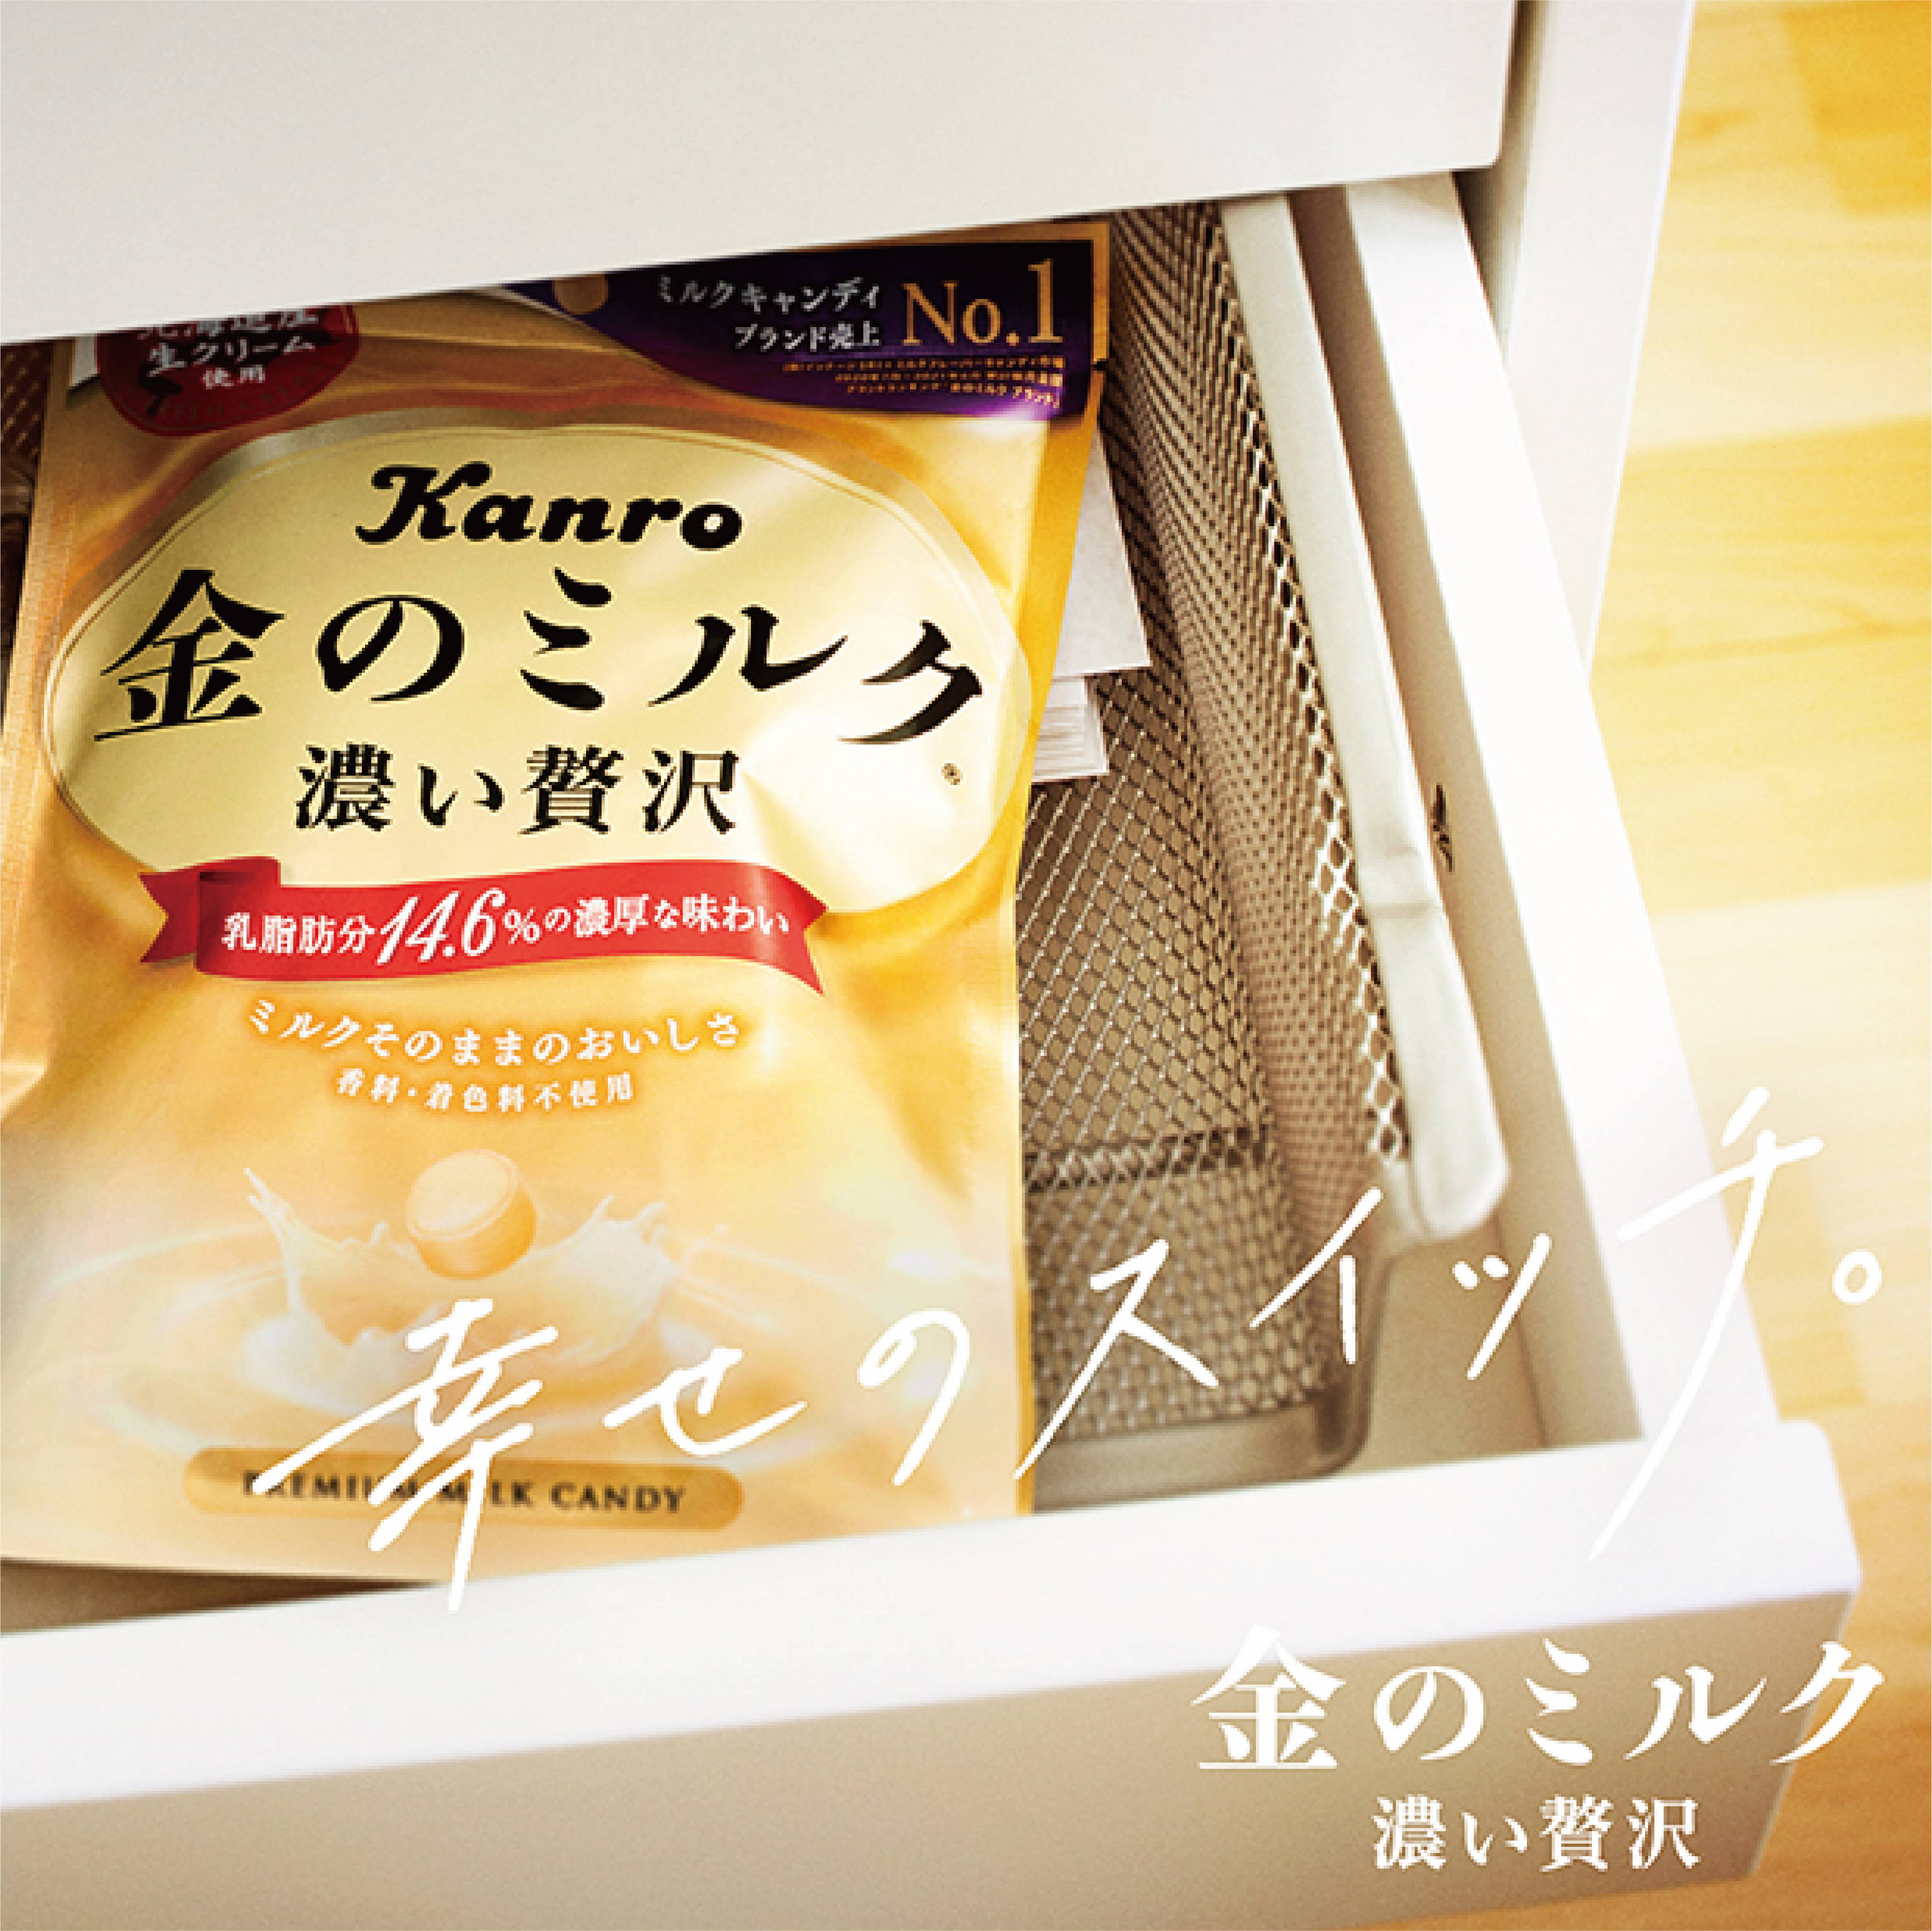 金のミルク キャンディ ブランドサイト – Kanro POCKeT